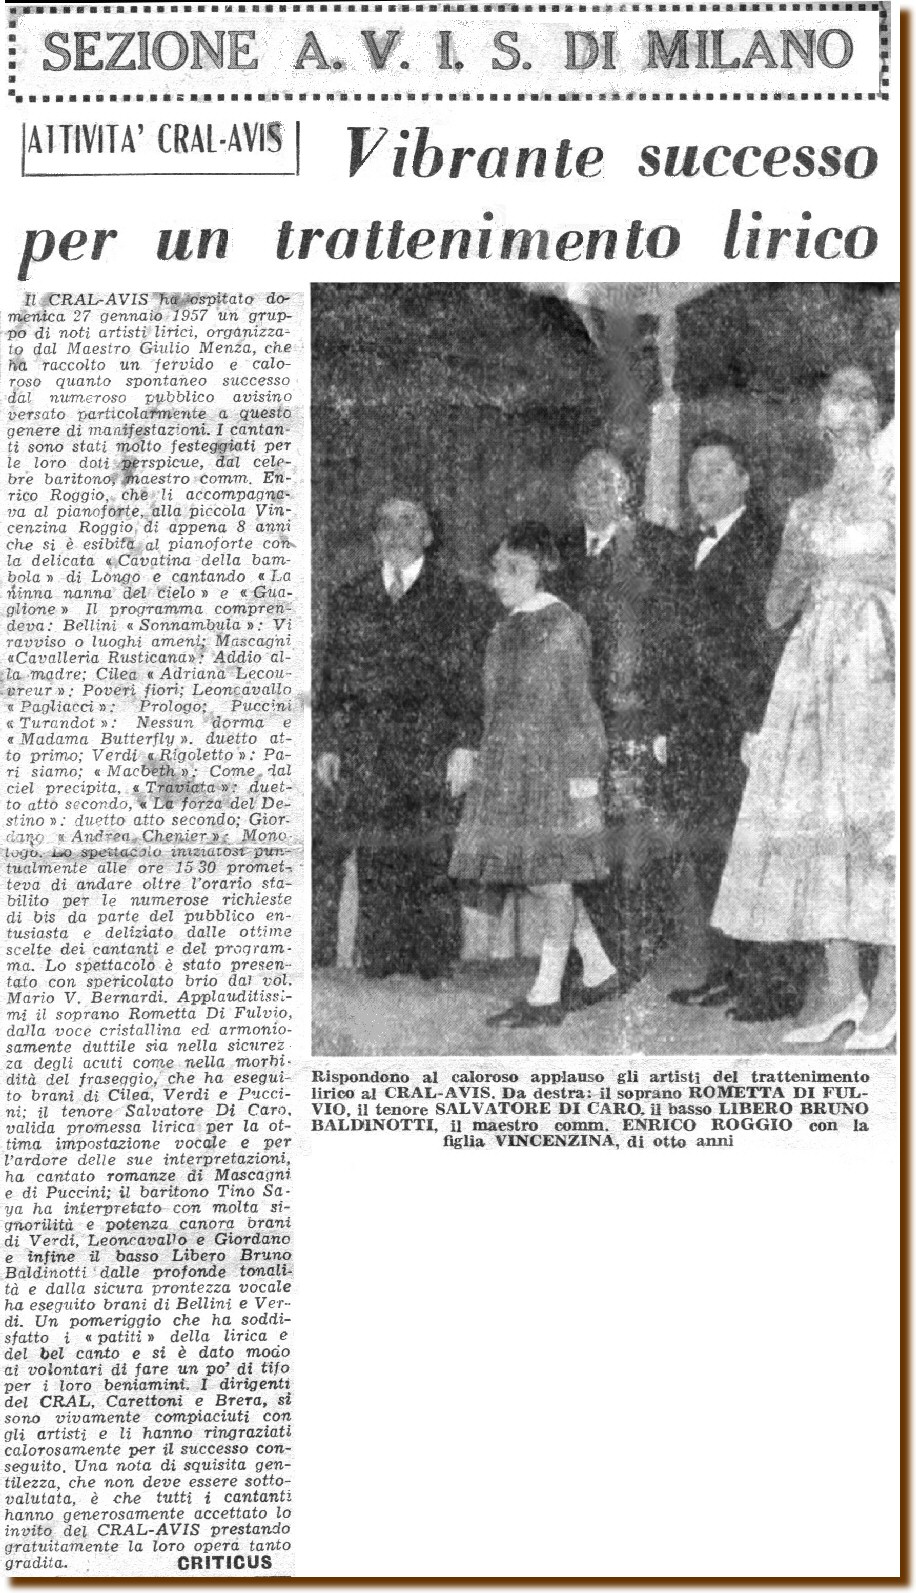 Milano 27 gennaio 1957 - Esse o Esse - Articolo tratto dal Periodico Ufficiale Mensile  dell'AVIS marzo 1957 